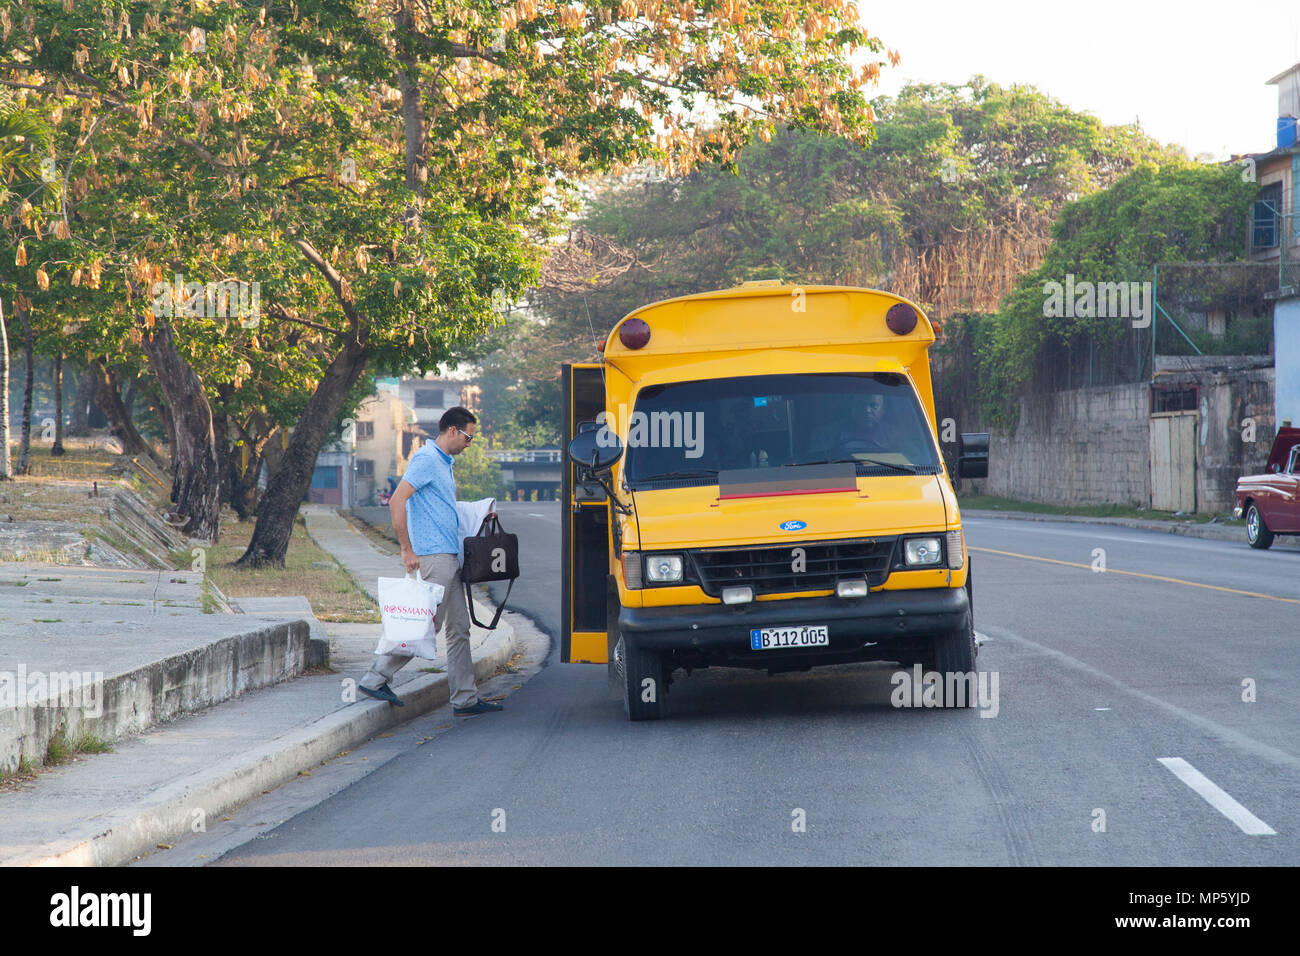 Bus stop in Havana Cuba Stock Photo